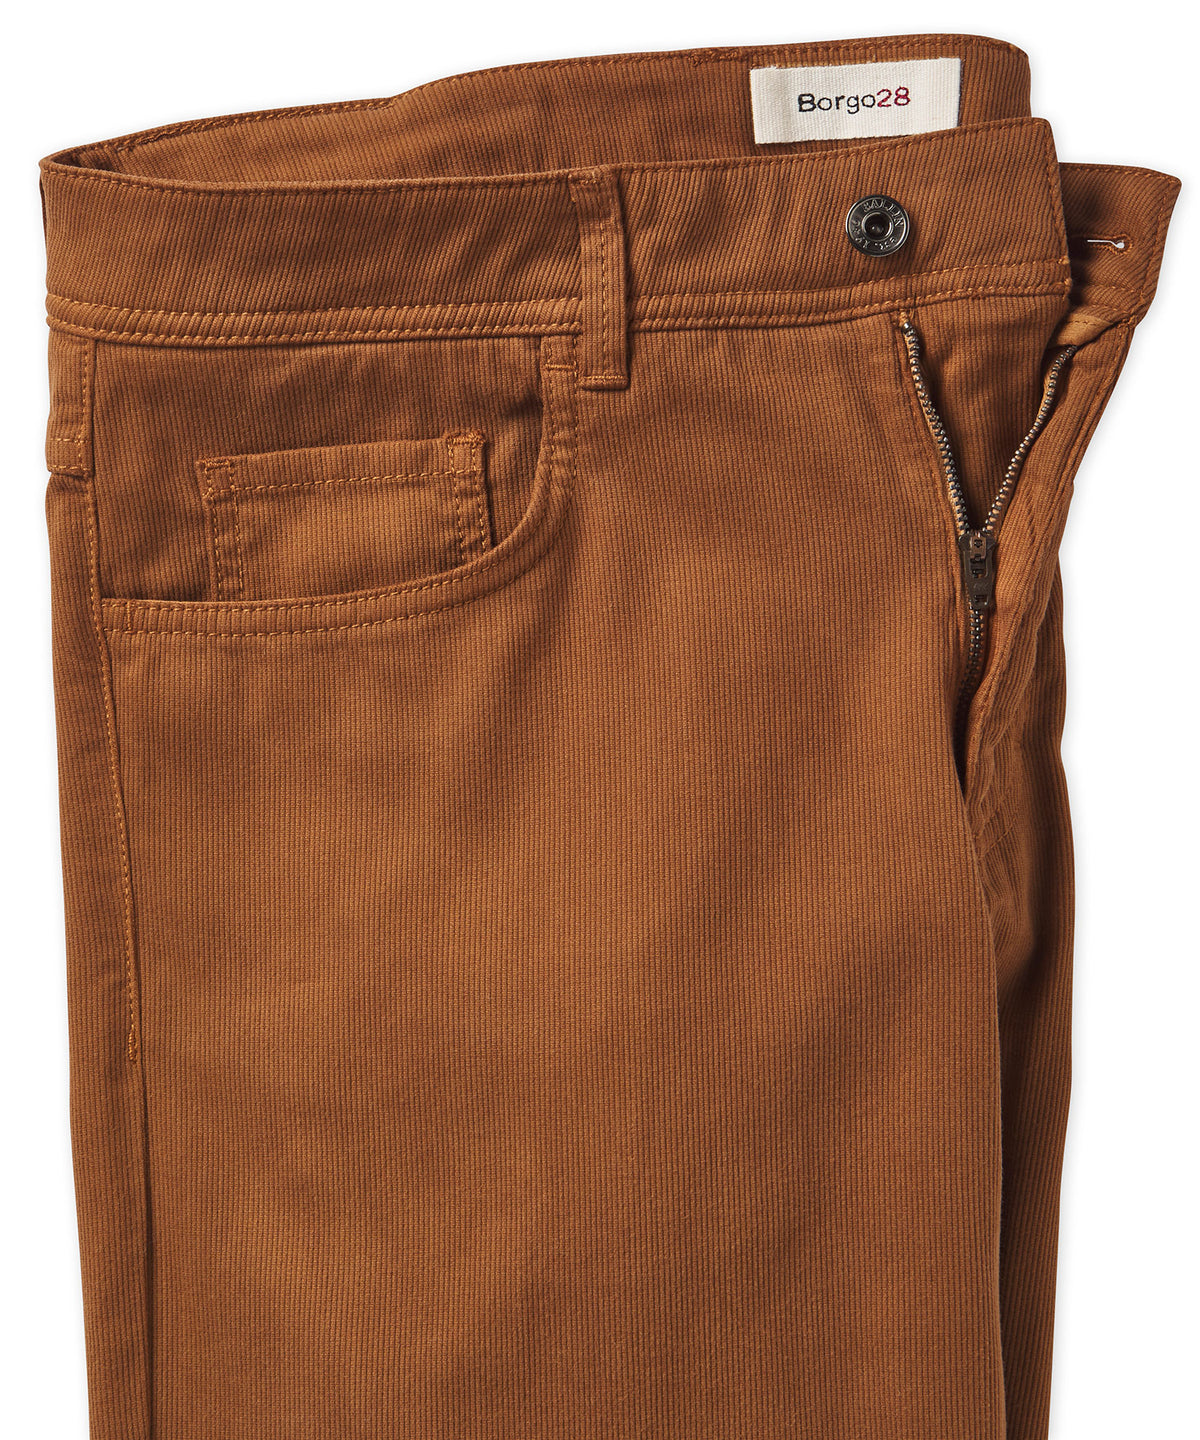 Crescent 5-Pocket Cord Pant